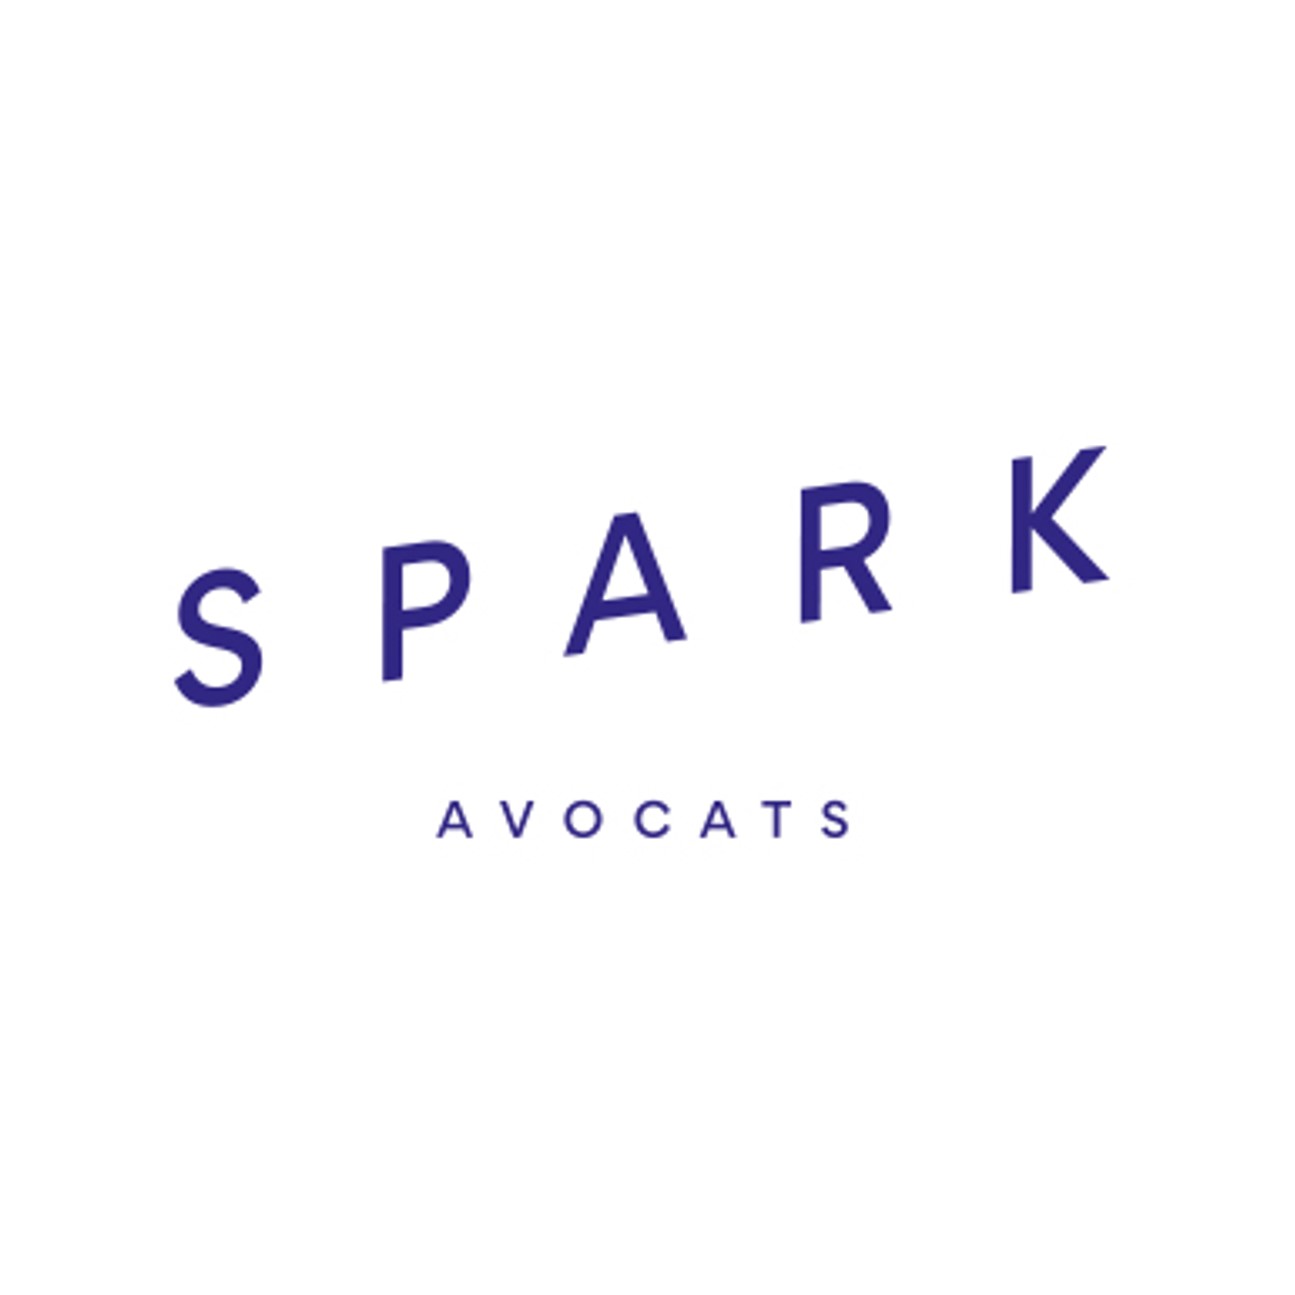 Spark Avocats